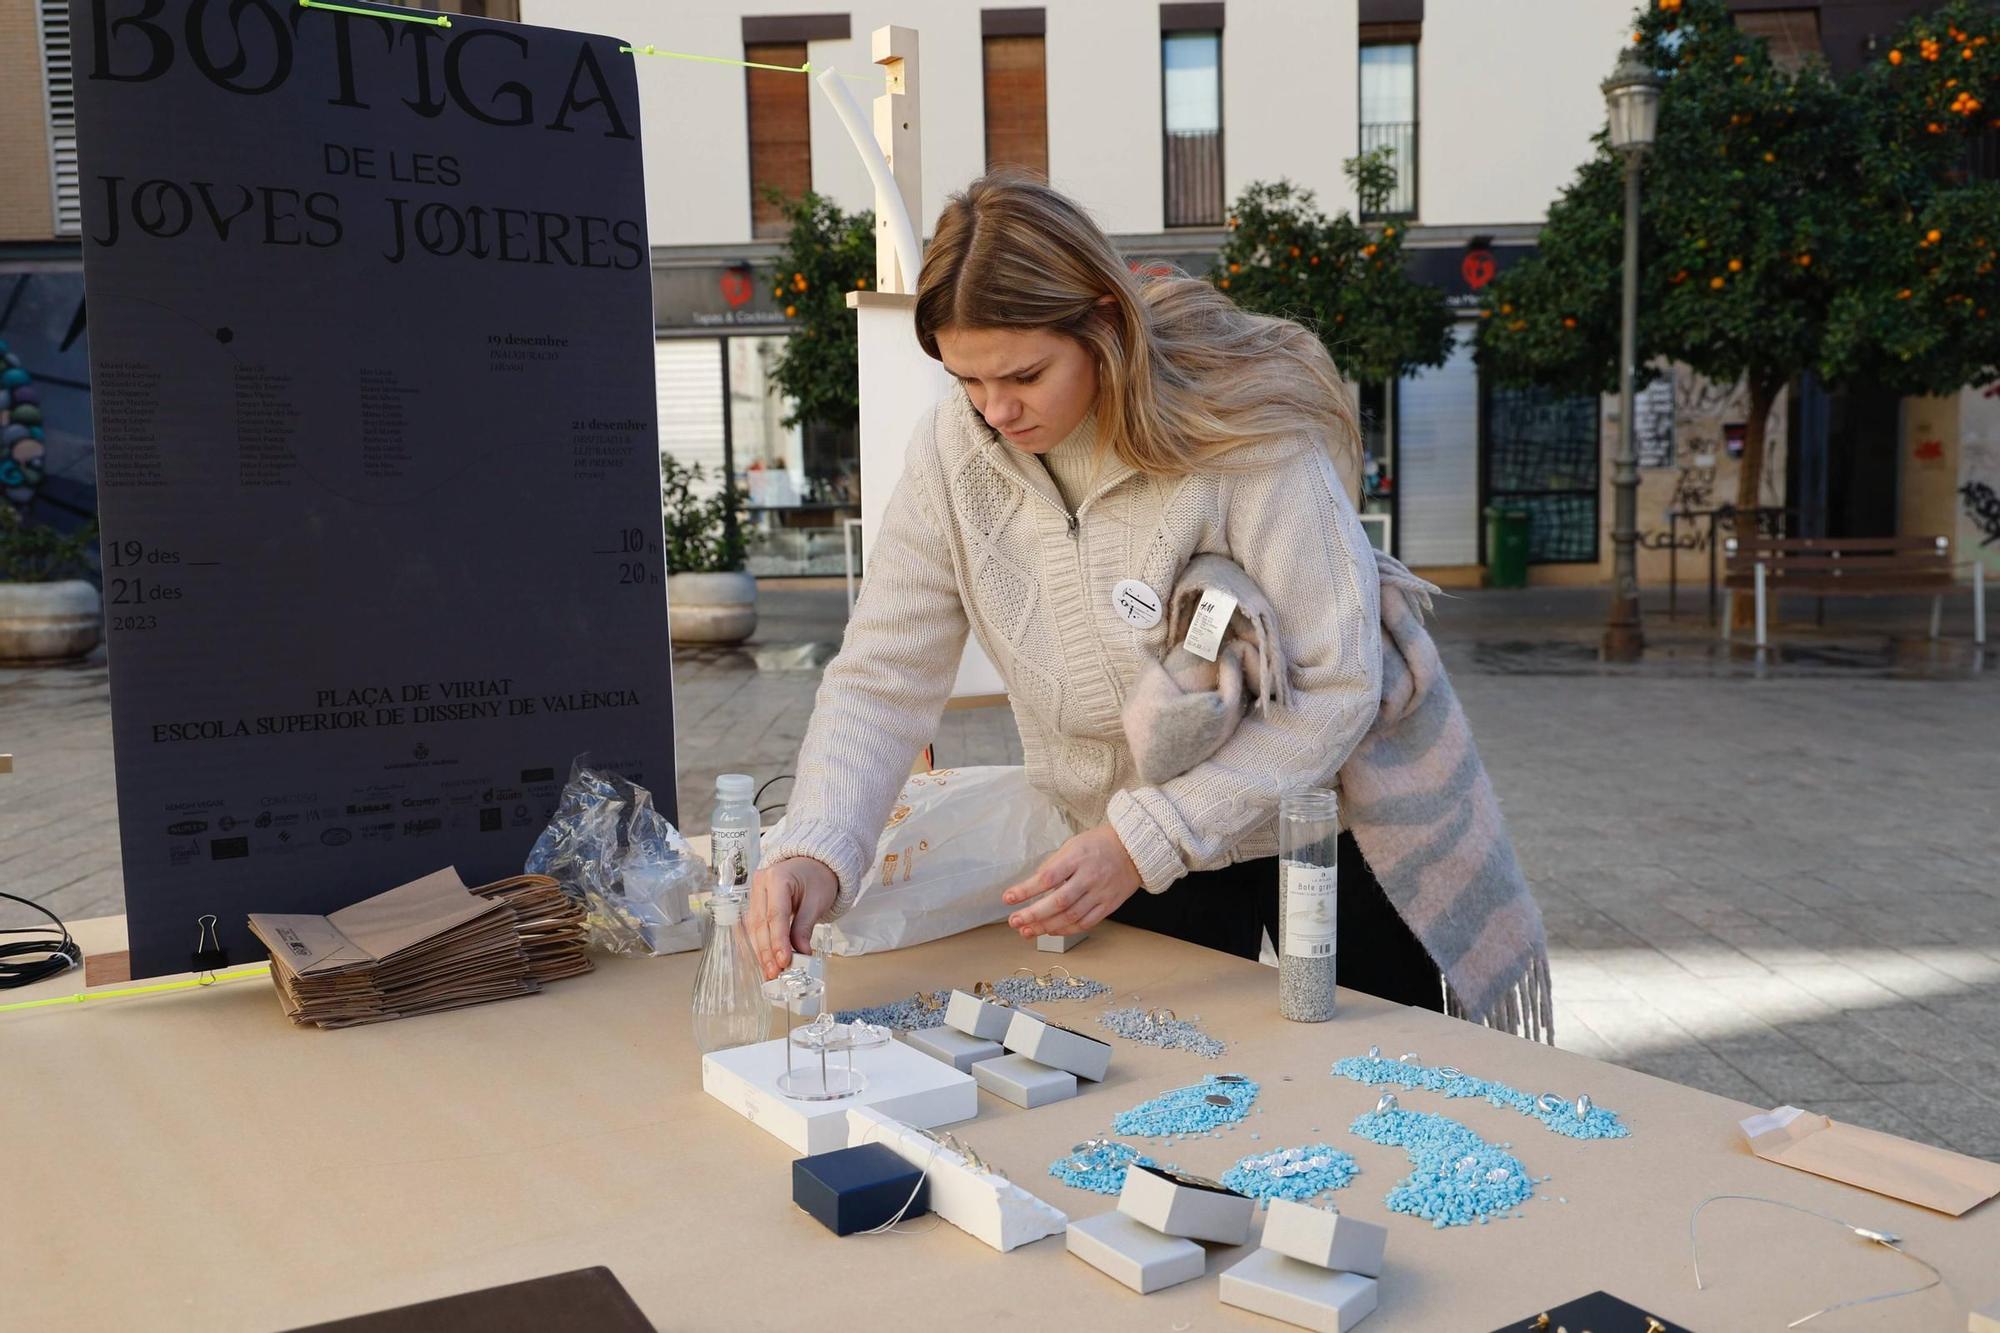 Las joyas más creativas toman la calle en València